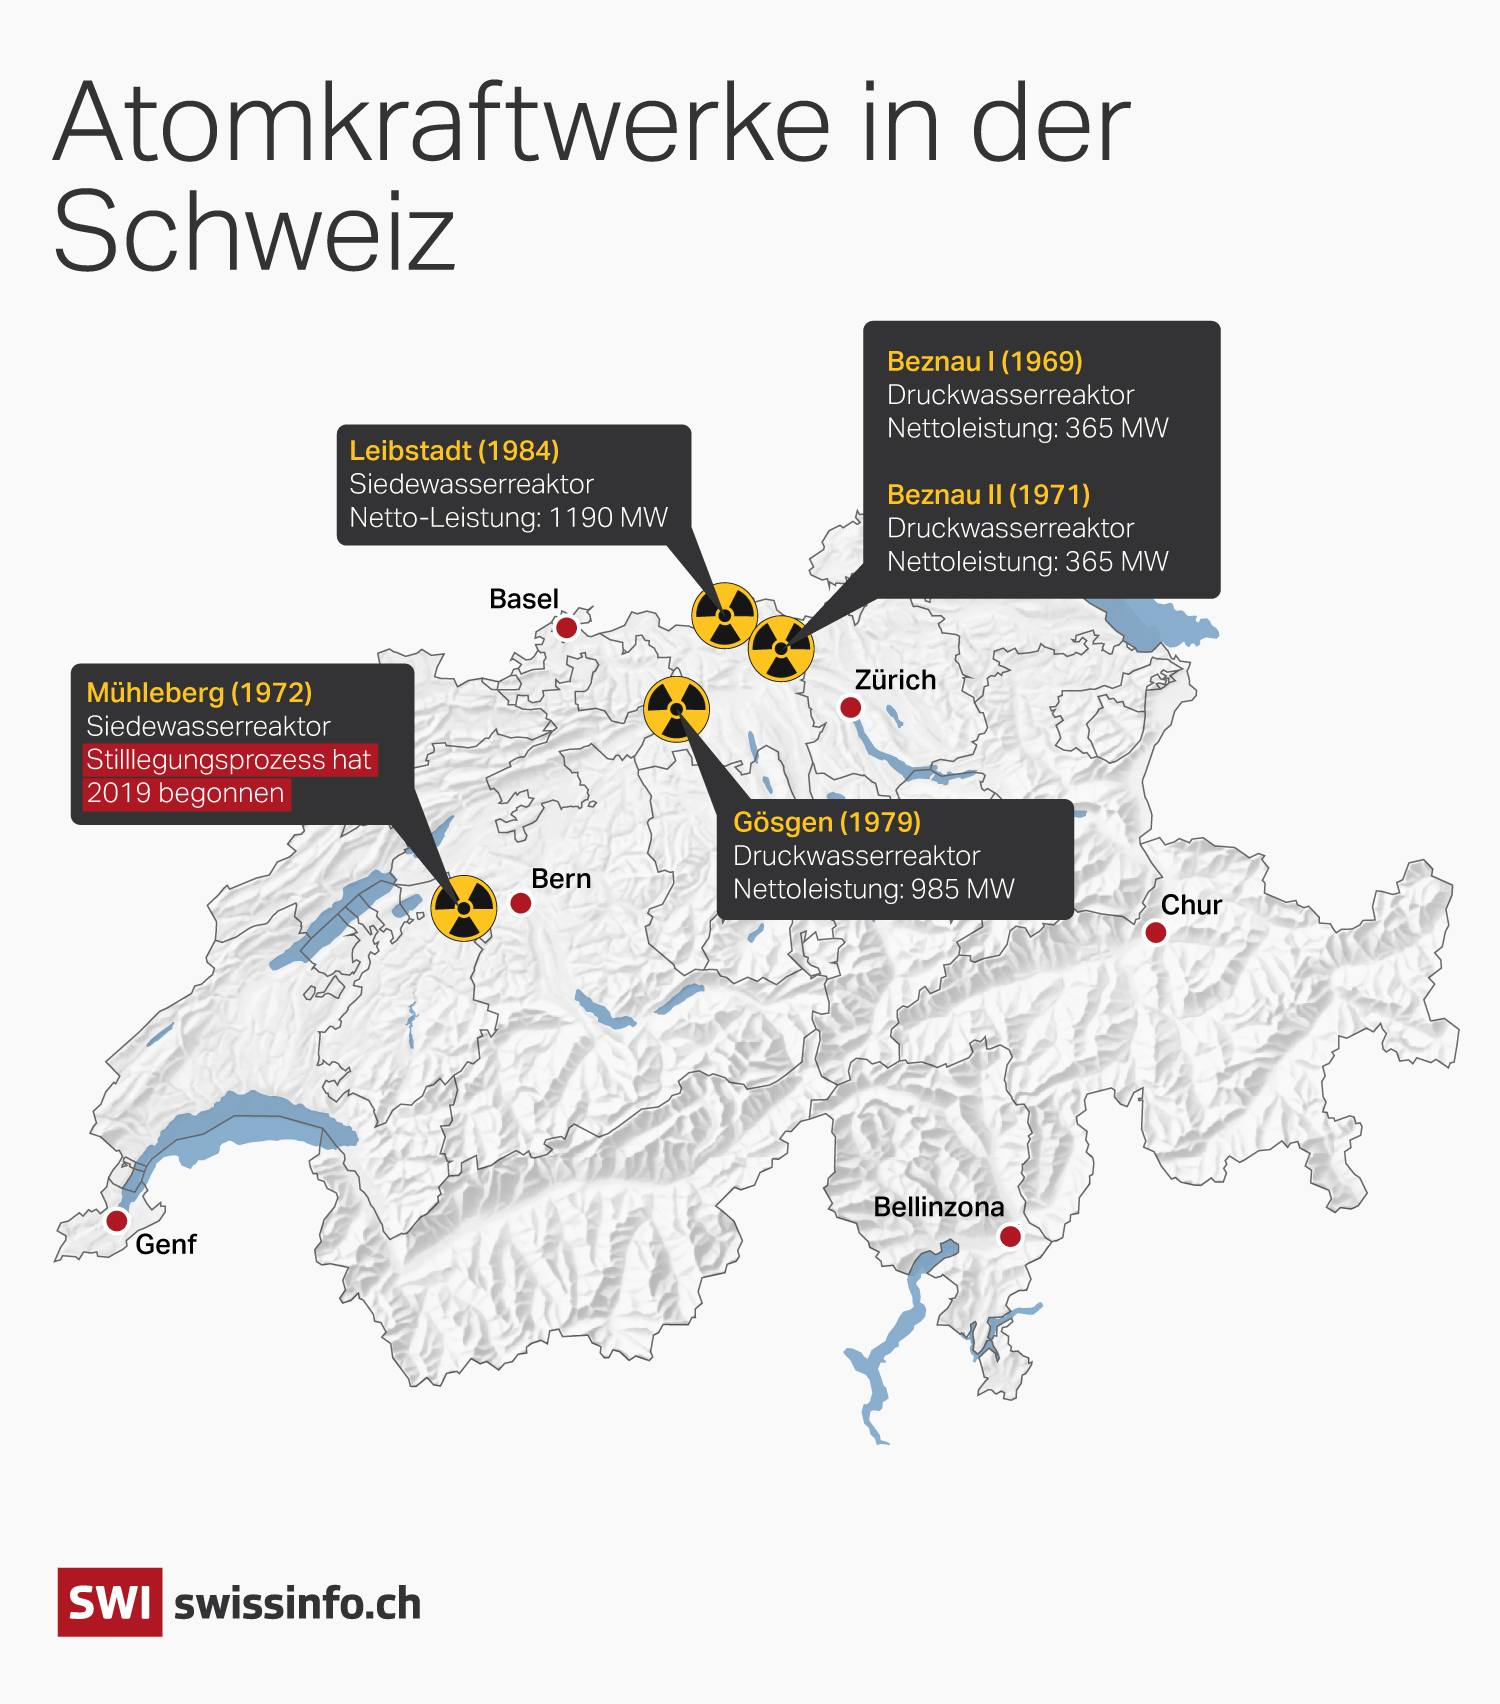 Atomkraftwerke in der Schweiz